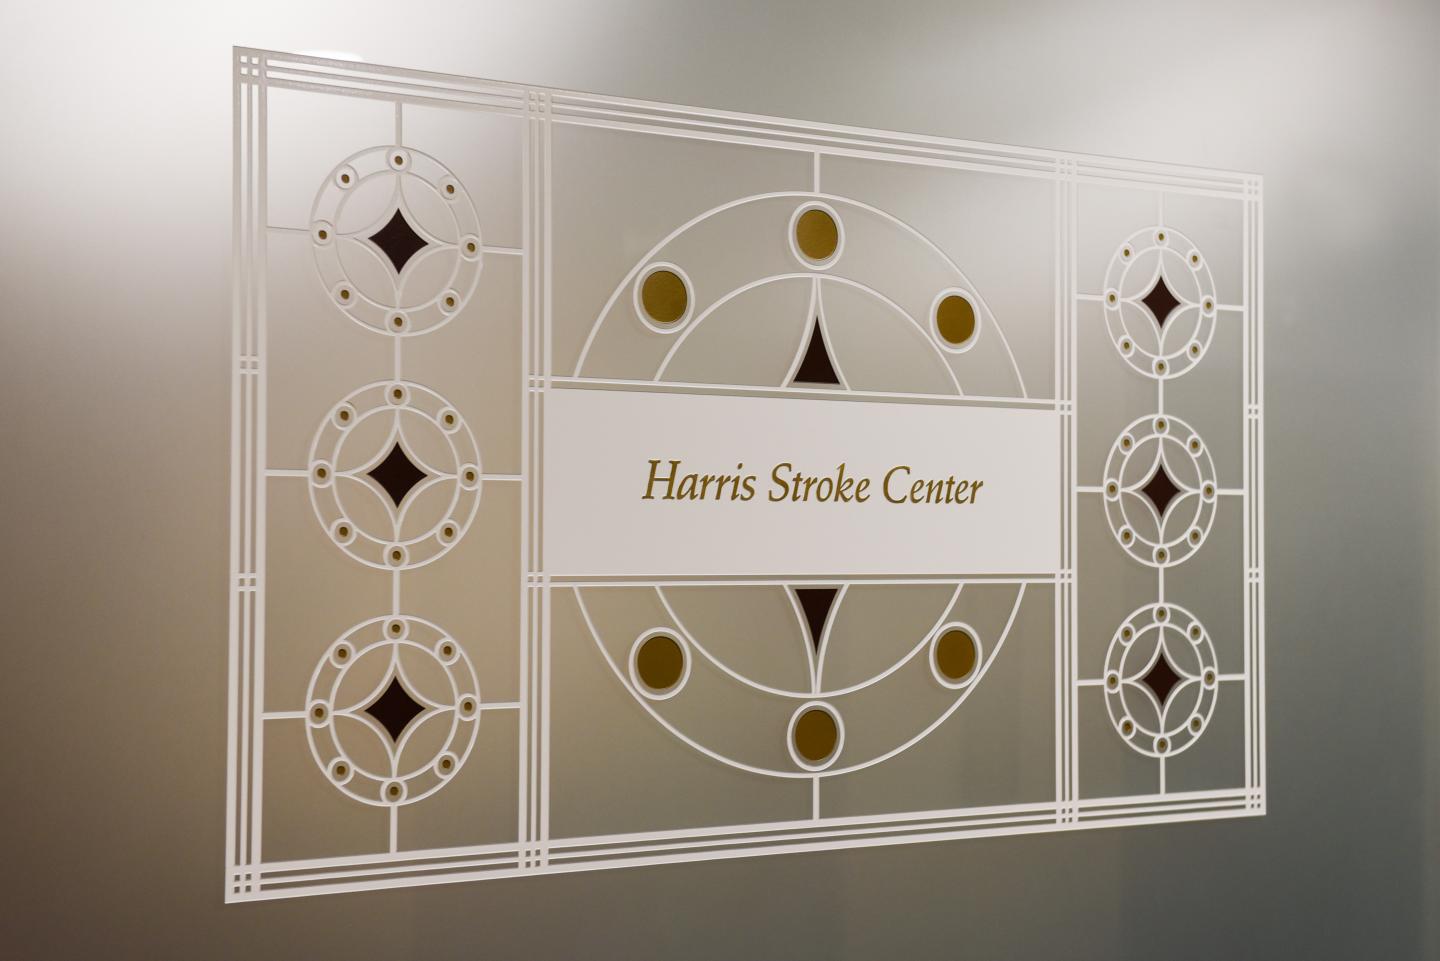 The Harris Stoke Center